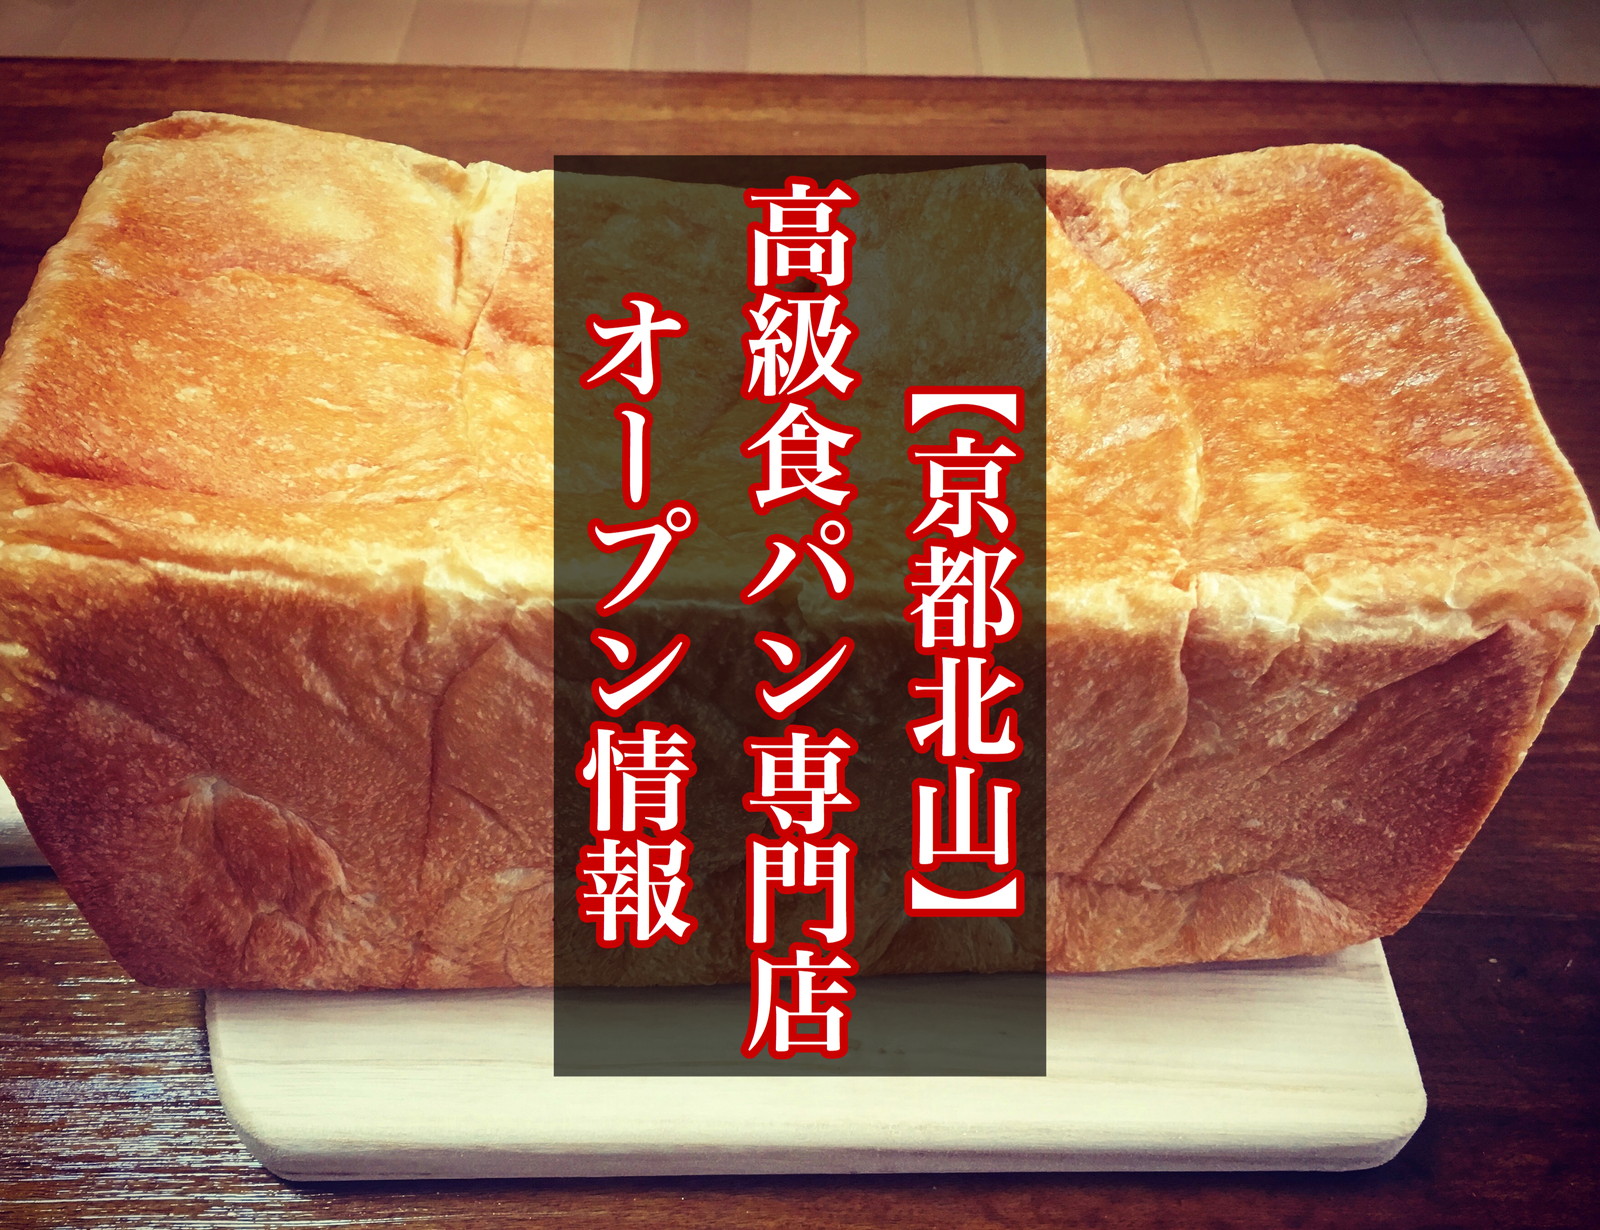 京都北山 朝起きたらママのママ 高級食パン専門店が年10月3日open 岸本拓也さんプロデュースの新店はウグイス豆の豆パンが登場 まいぱん